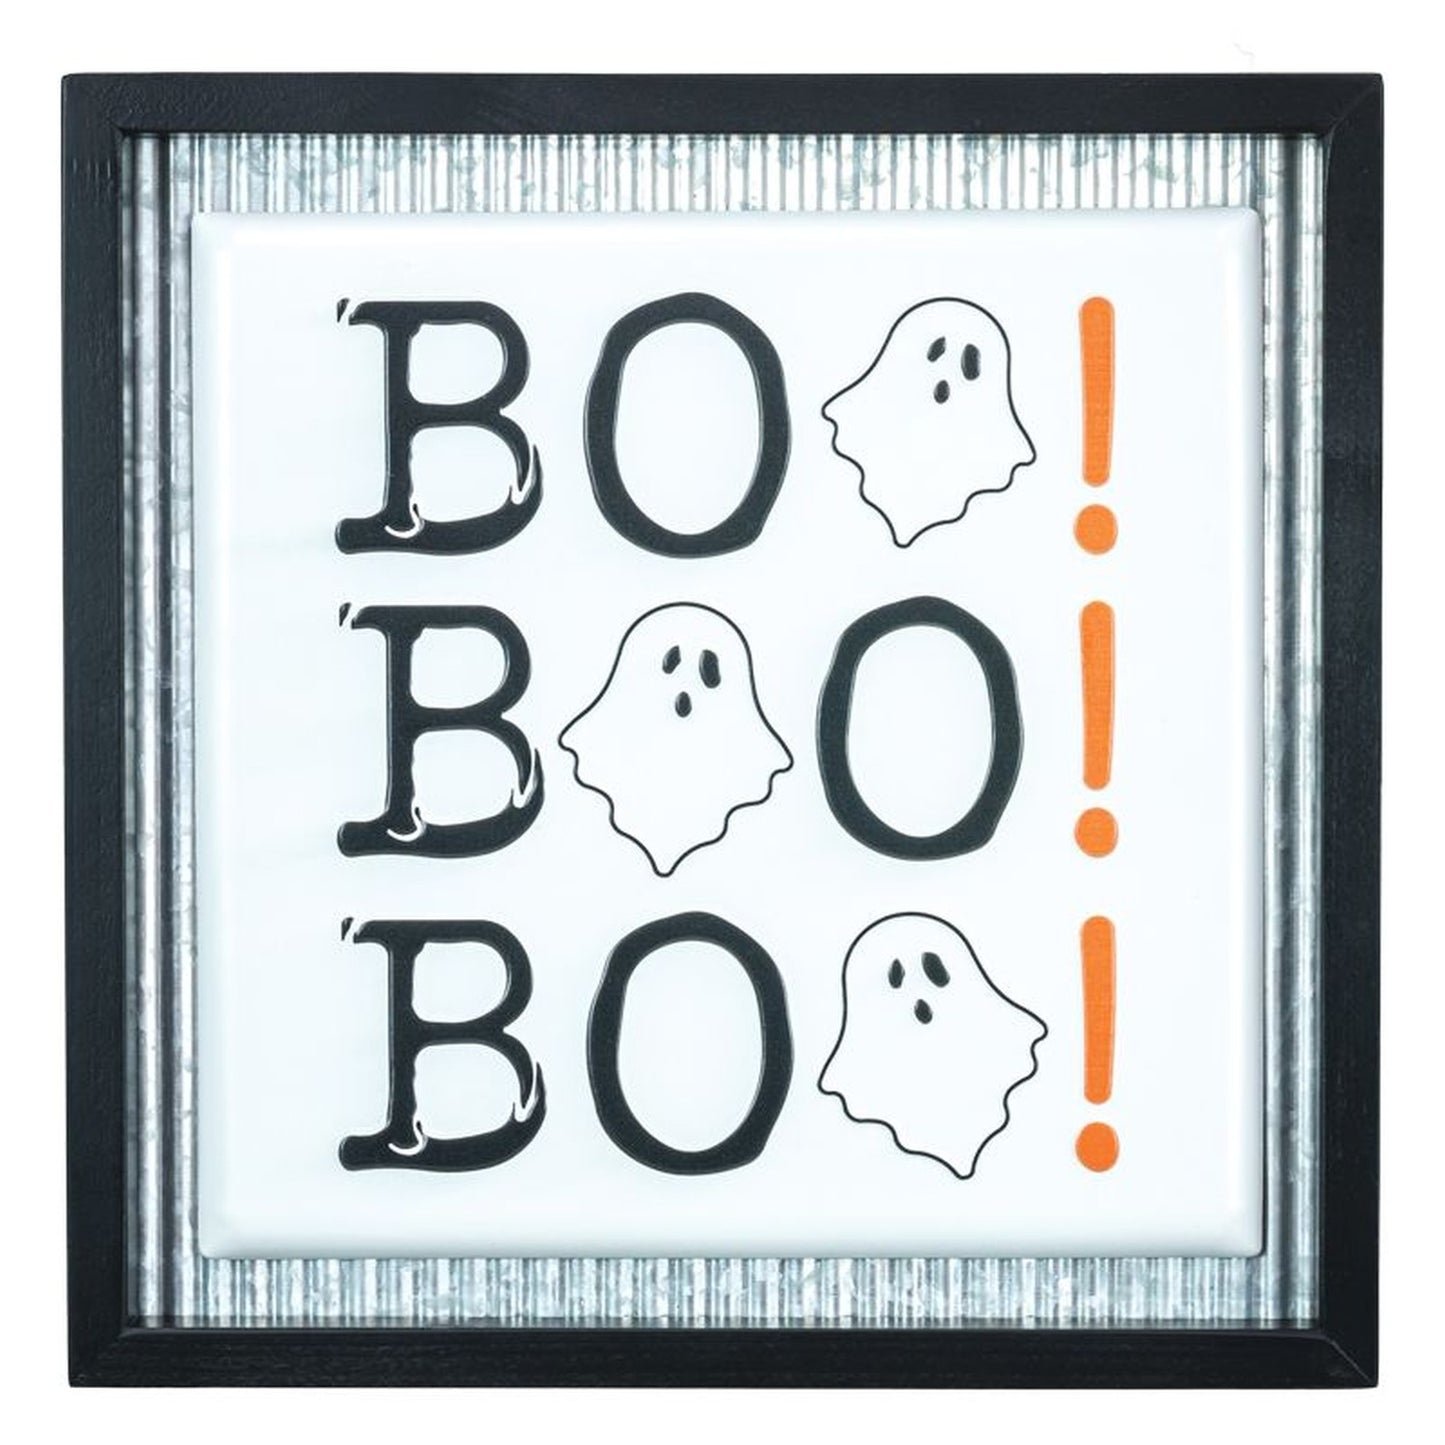 Hanna's Handiworks Boo Boo Boo Sign